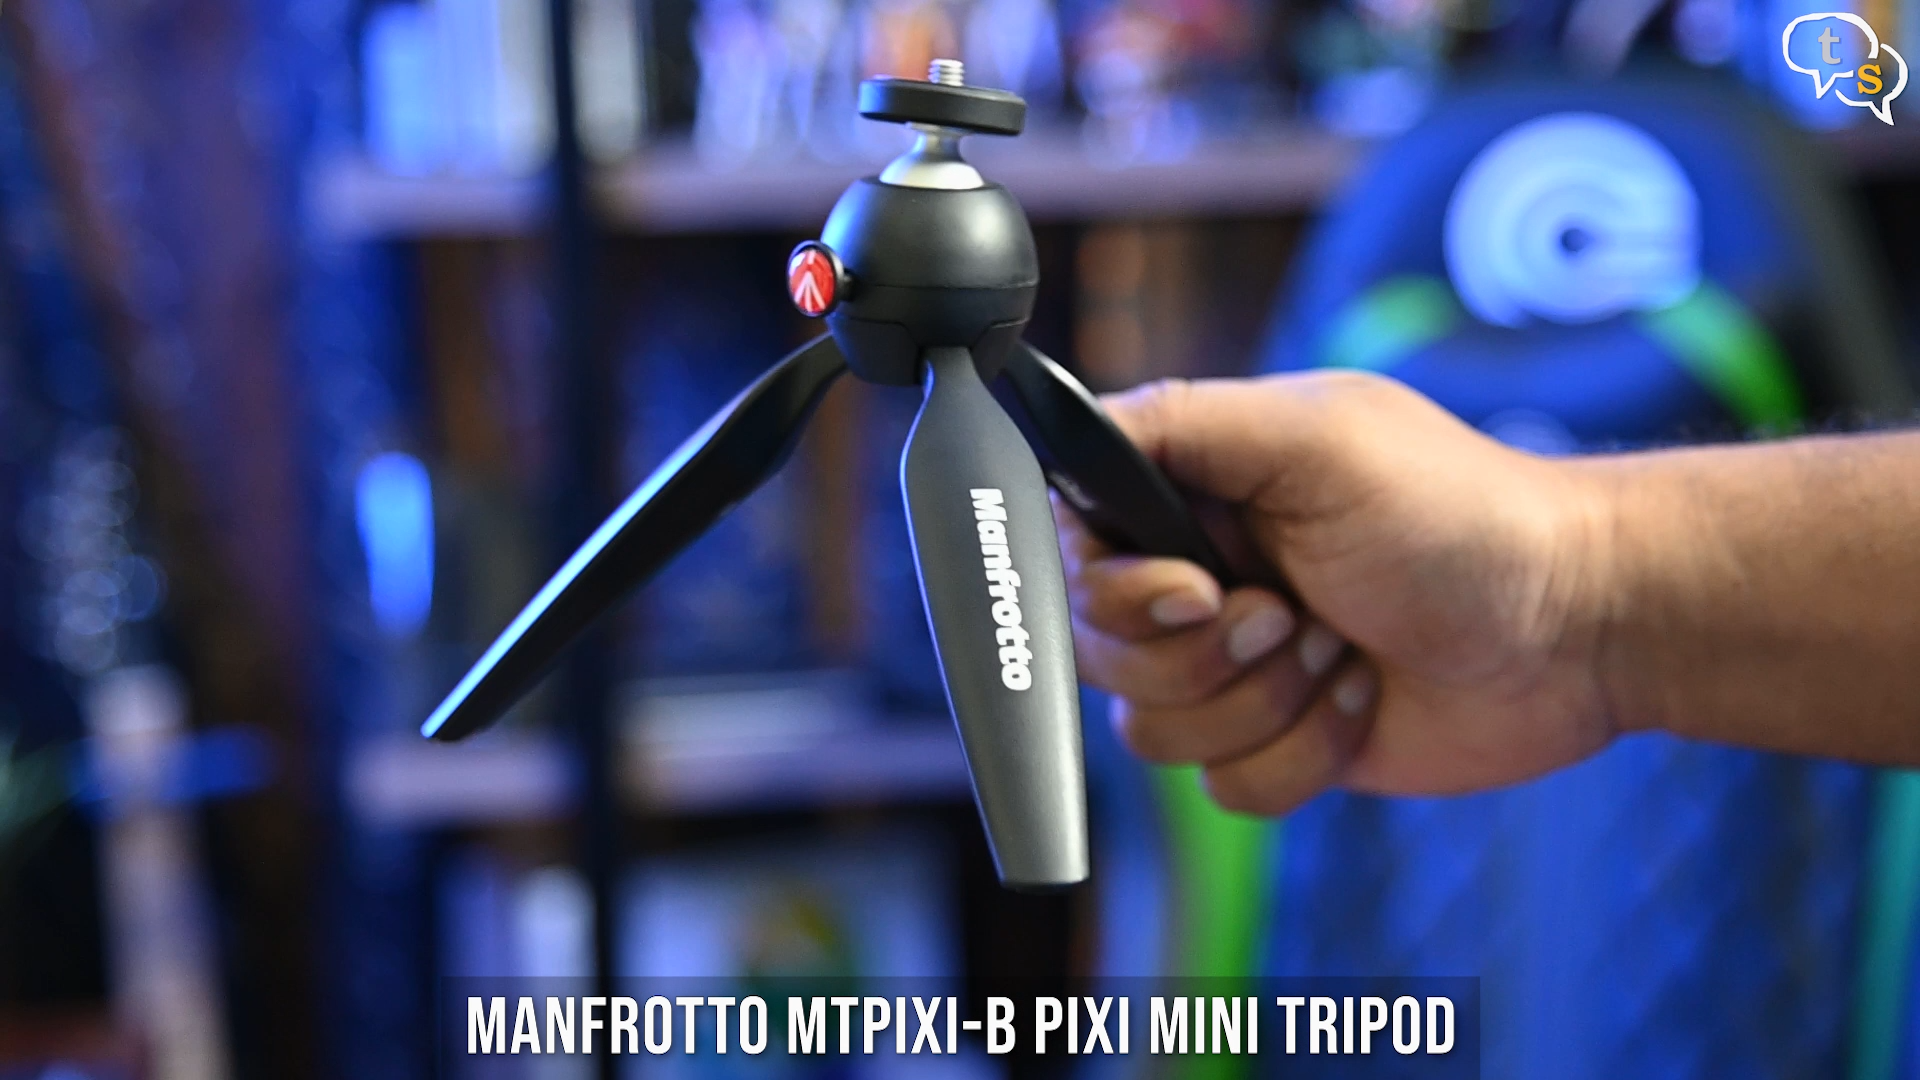 Manfrotto Pixi Mini tripod